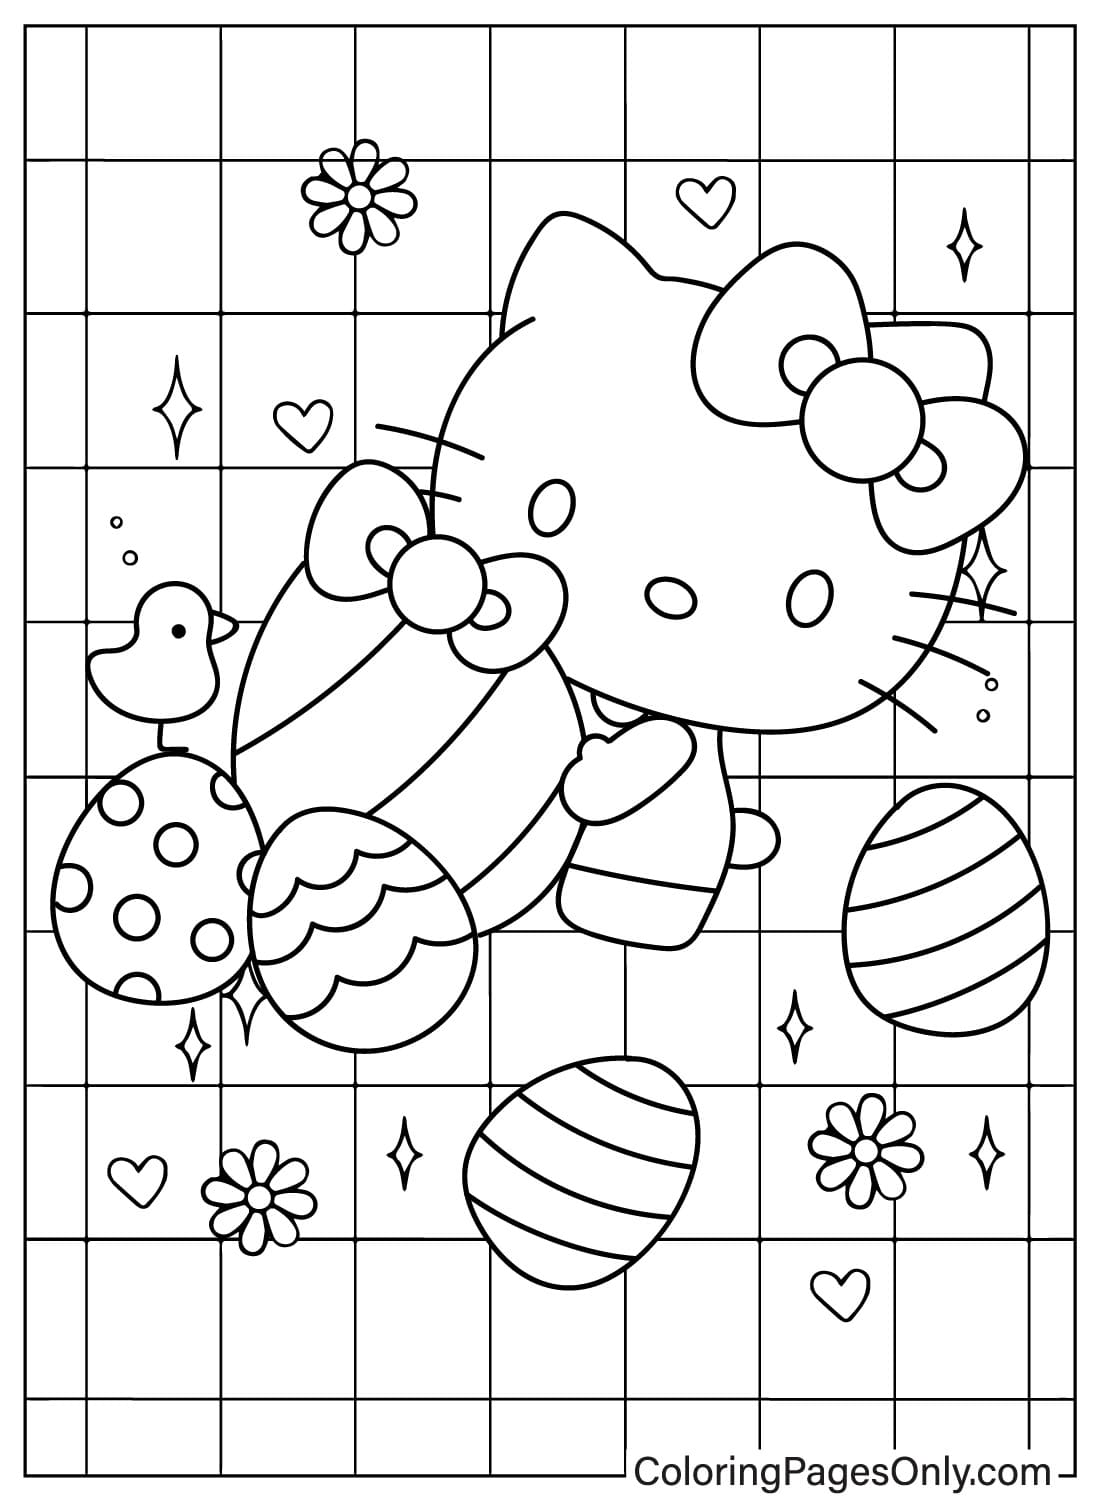 Pagina da colorare di Hello Kitty pasquale gratuita dal cartone animato pasquale